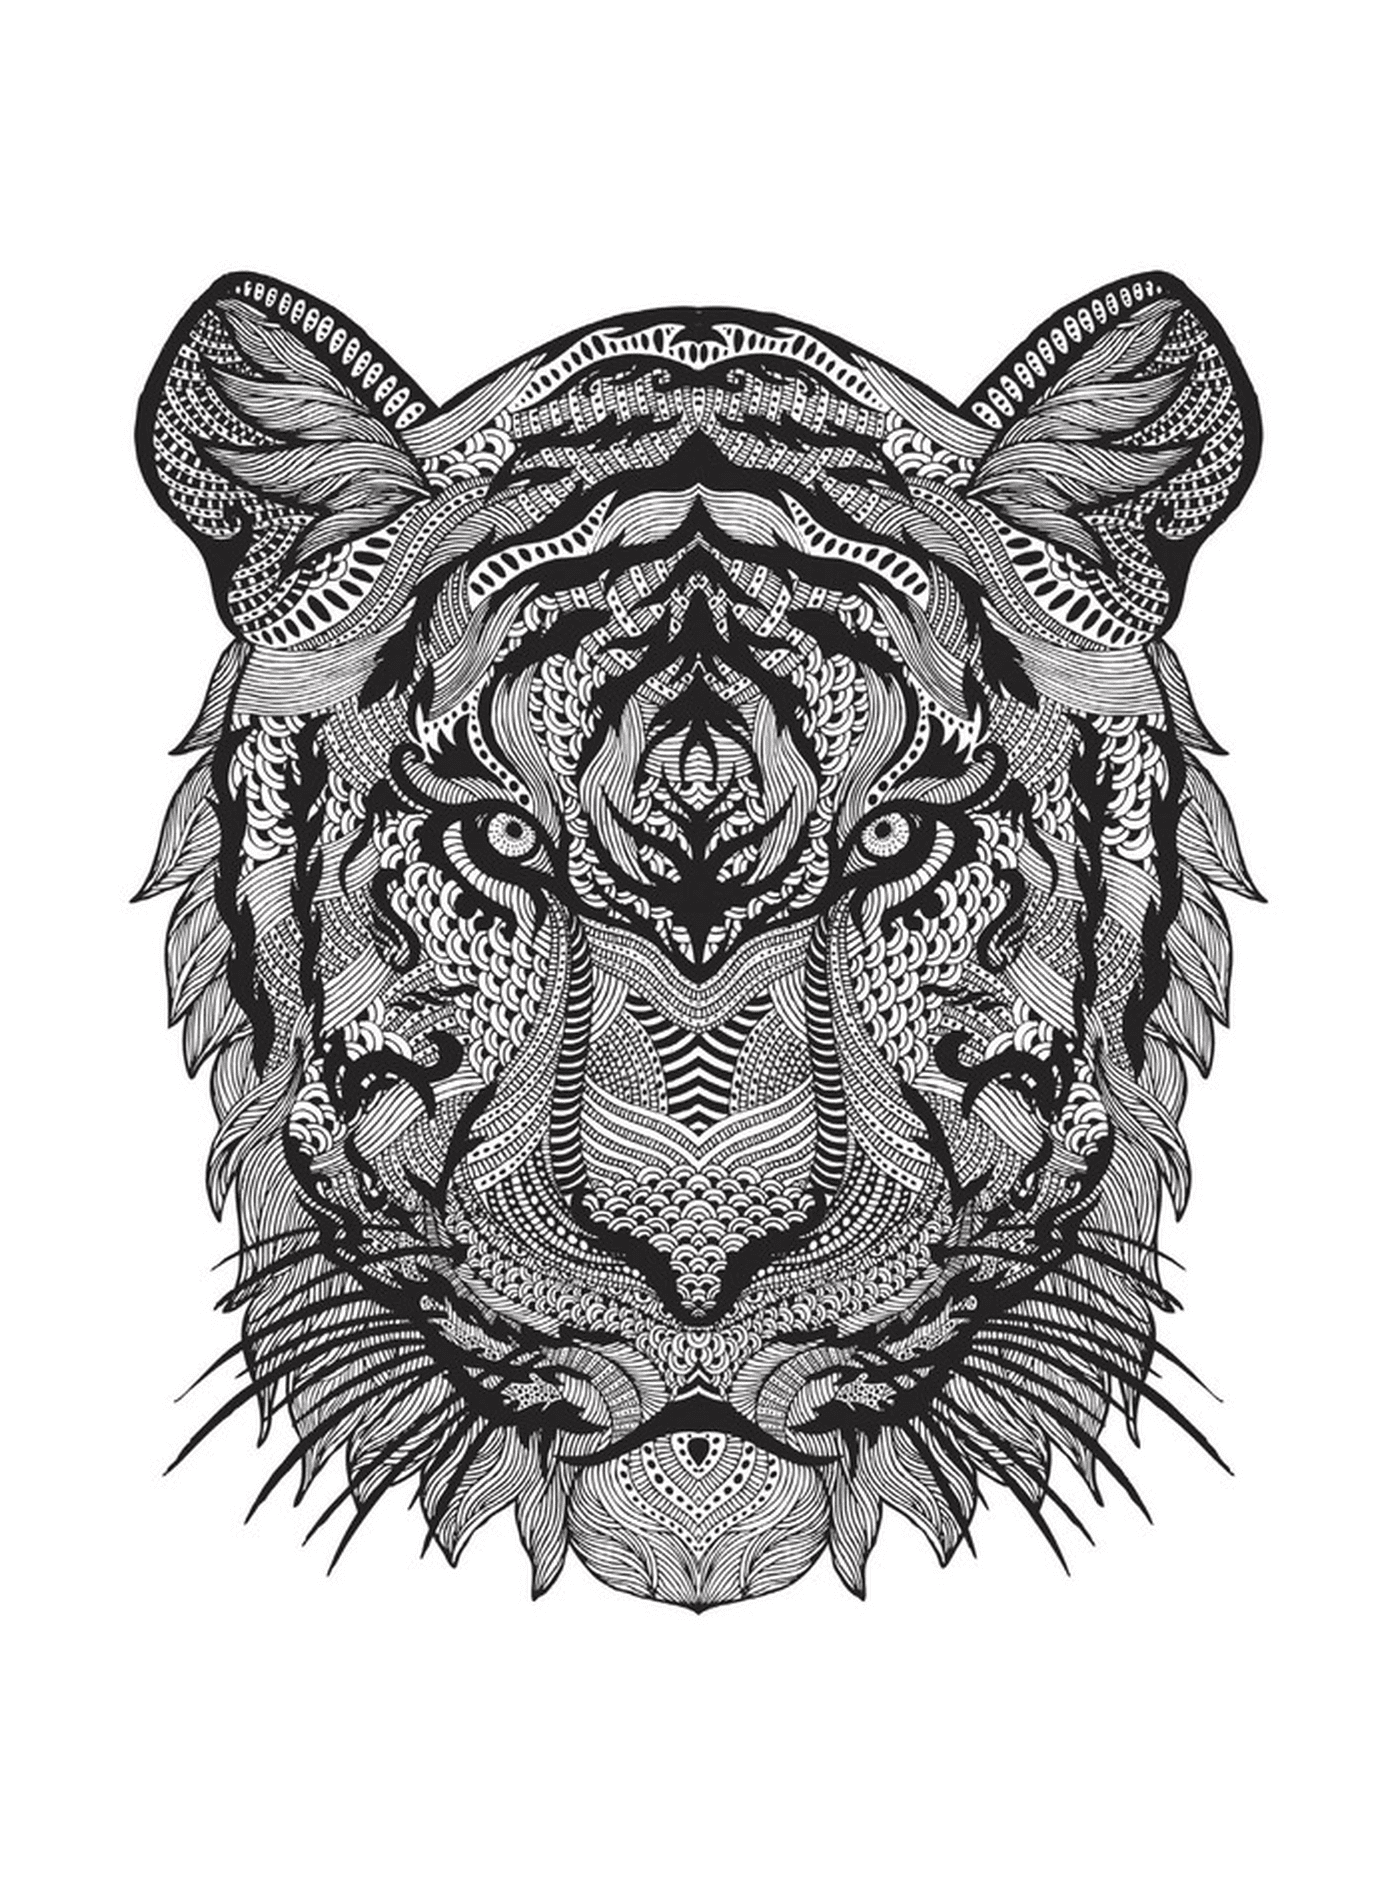  पुरुषला के साथ एक बाघ का सिर 